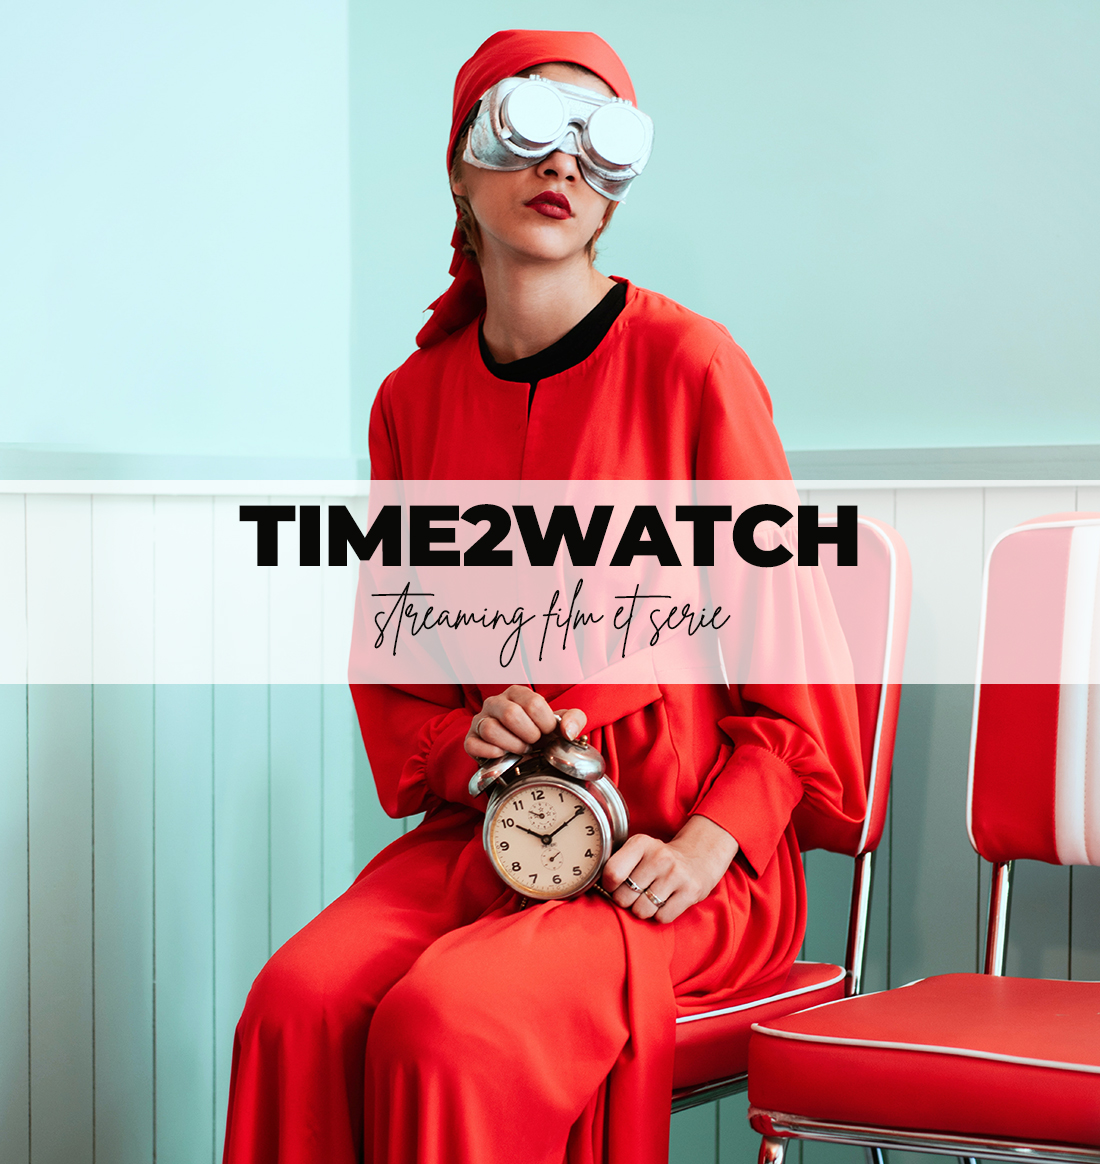 Time2watch: أفضل 25 موقعًا مجانيًا لمشاهدة الأفلام والمسلسلات